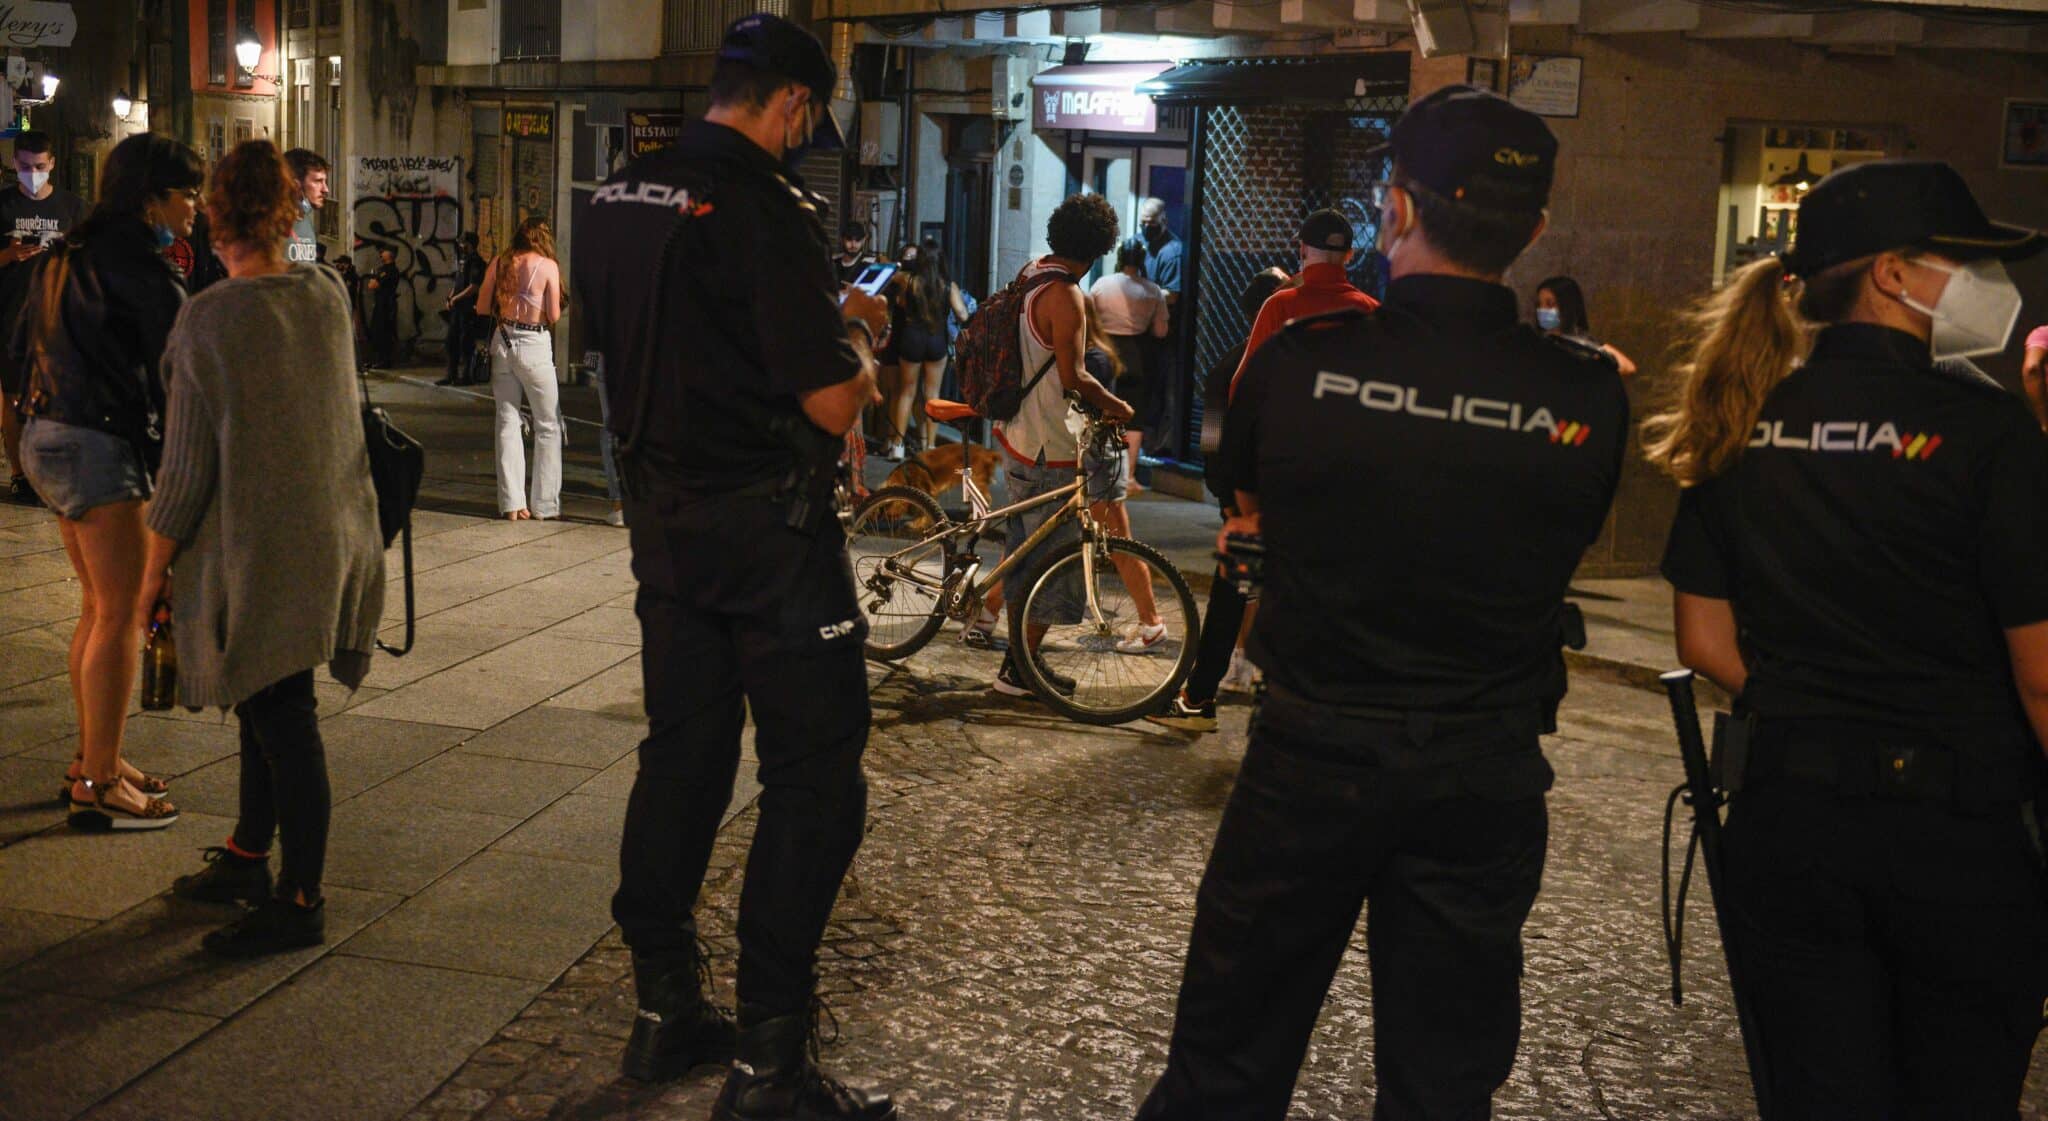 Policías nacionales, de servicio en una zona de ocio nocturno en el centro de Ourense.